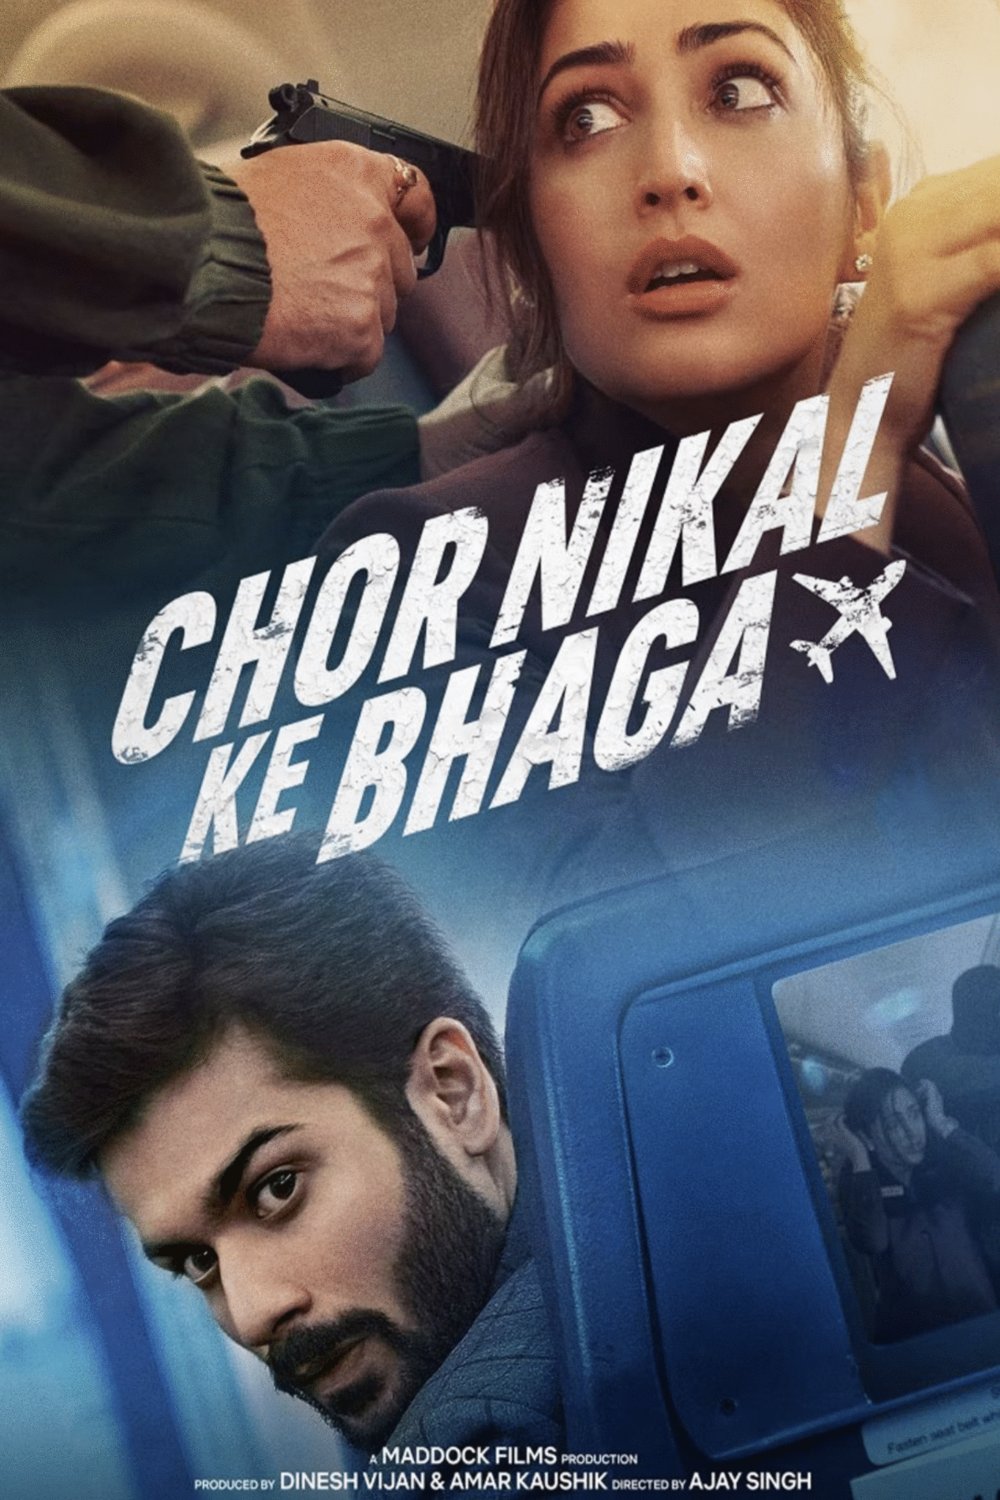 Hindi poster of the movie Chor Nikal Ke Bhaga